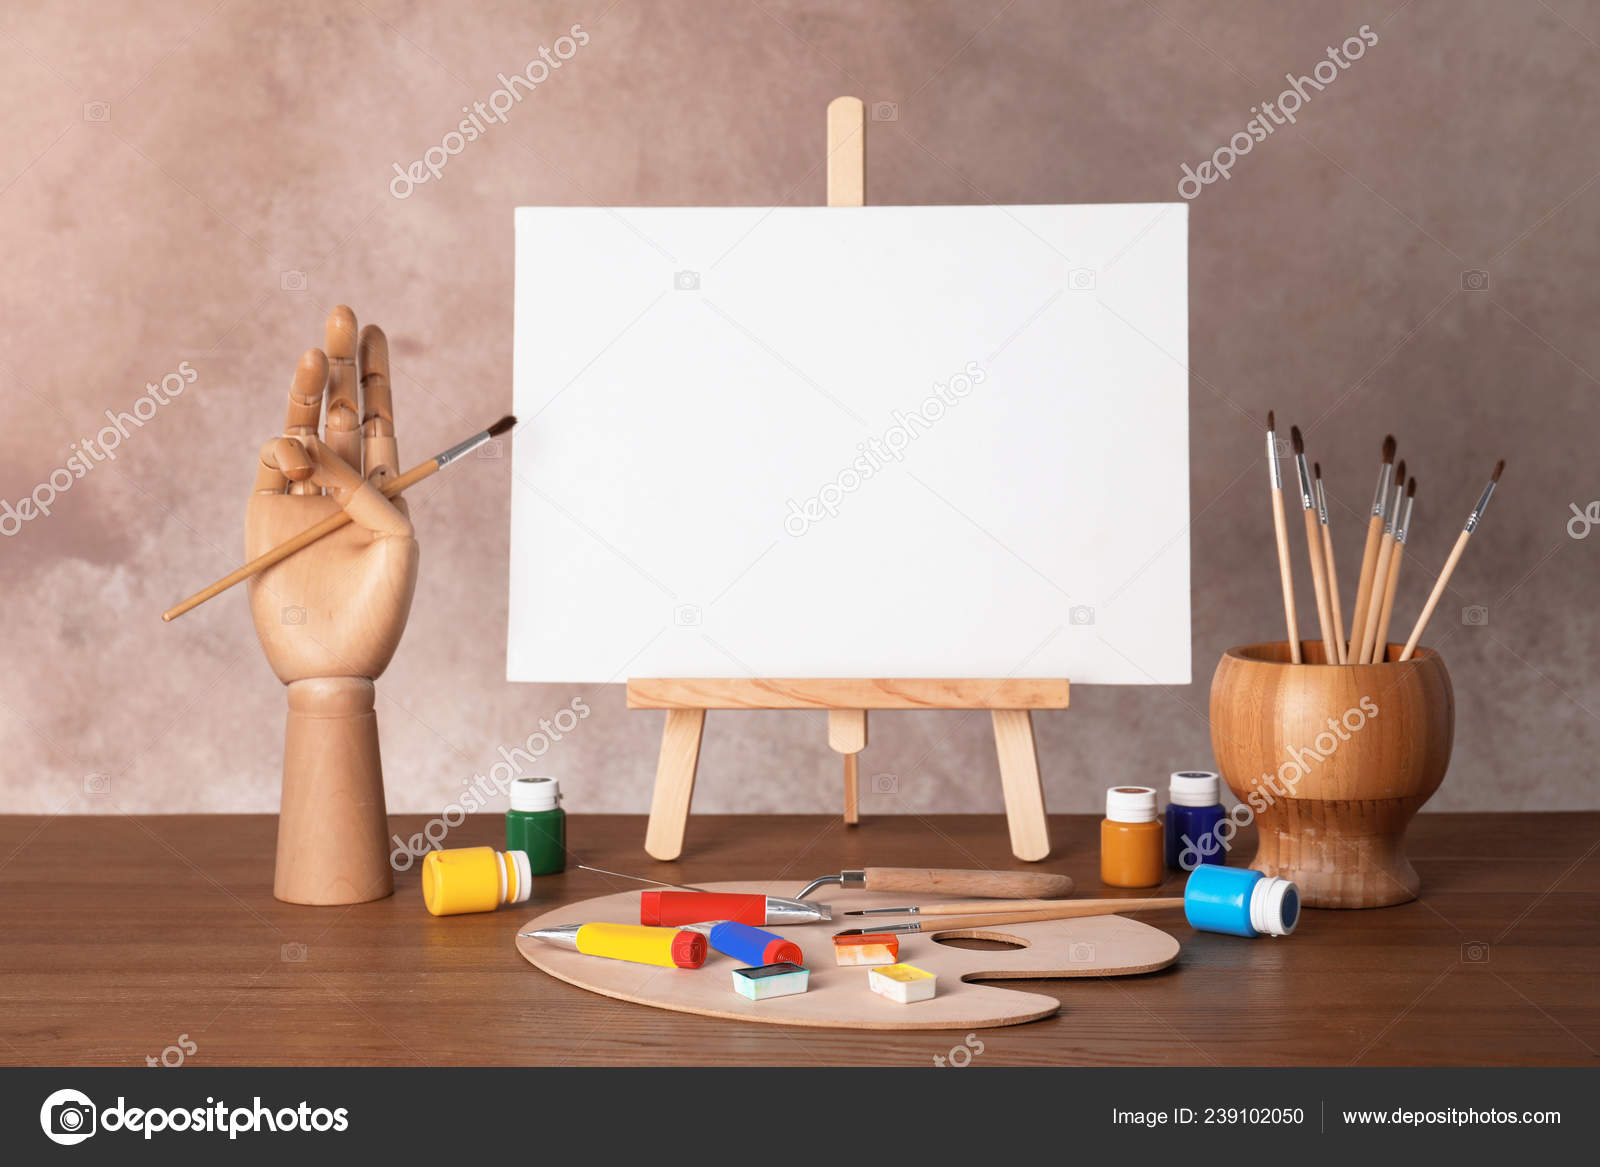 Blank Painting Board or Canvas Board, Wooden Easel, Art Board